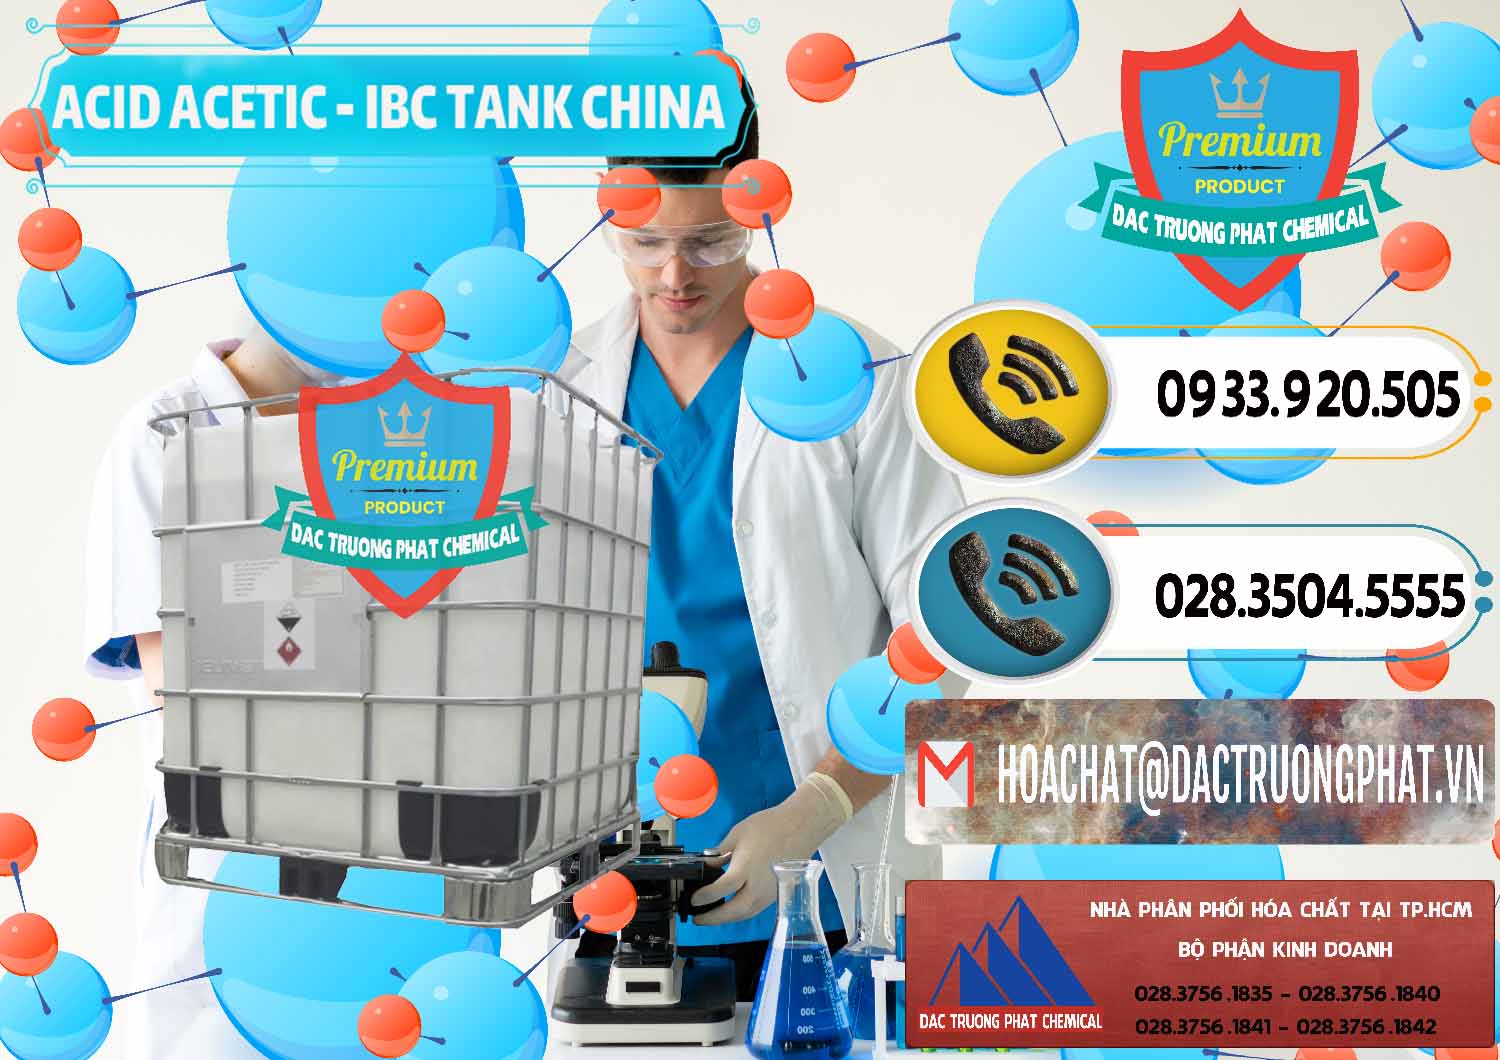 Cty bán - cung cấp Acetic Acid – Axit Acetic Tank Bồn IBC Trung Quốc China - 0443 - Công ty chuyên phân phối ( nhập khẩu ) hóa chất tại TP.HCM - hoachatdetnhuom.vn